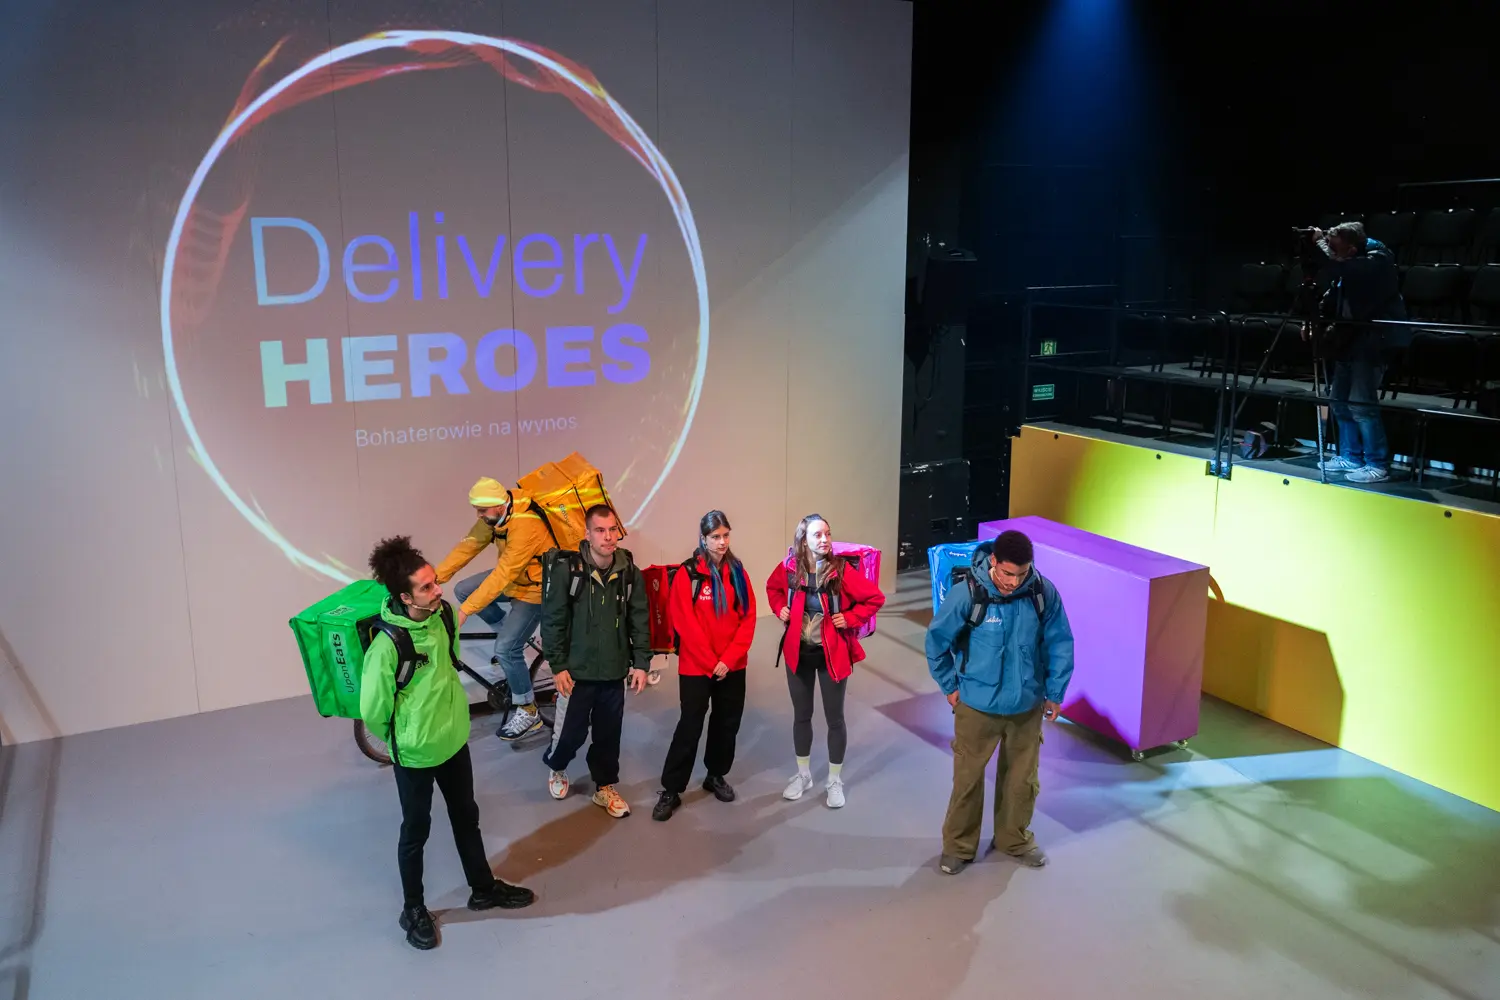 Premiera "Delivery Heroes. Bohaterowie na Wynos" w Teatrze Polskim w Poznaniu